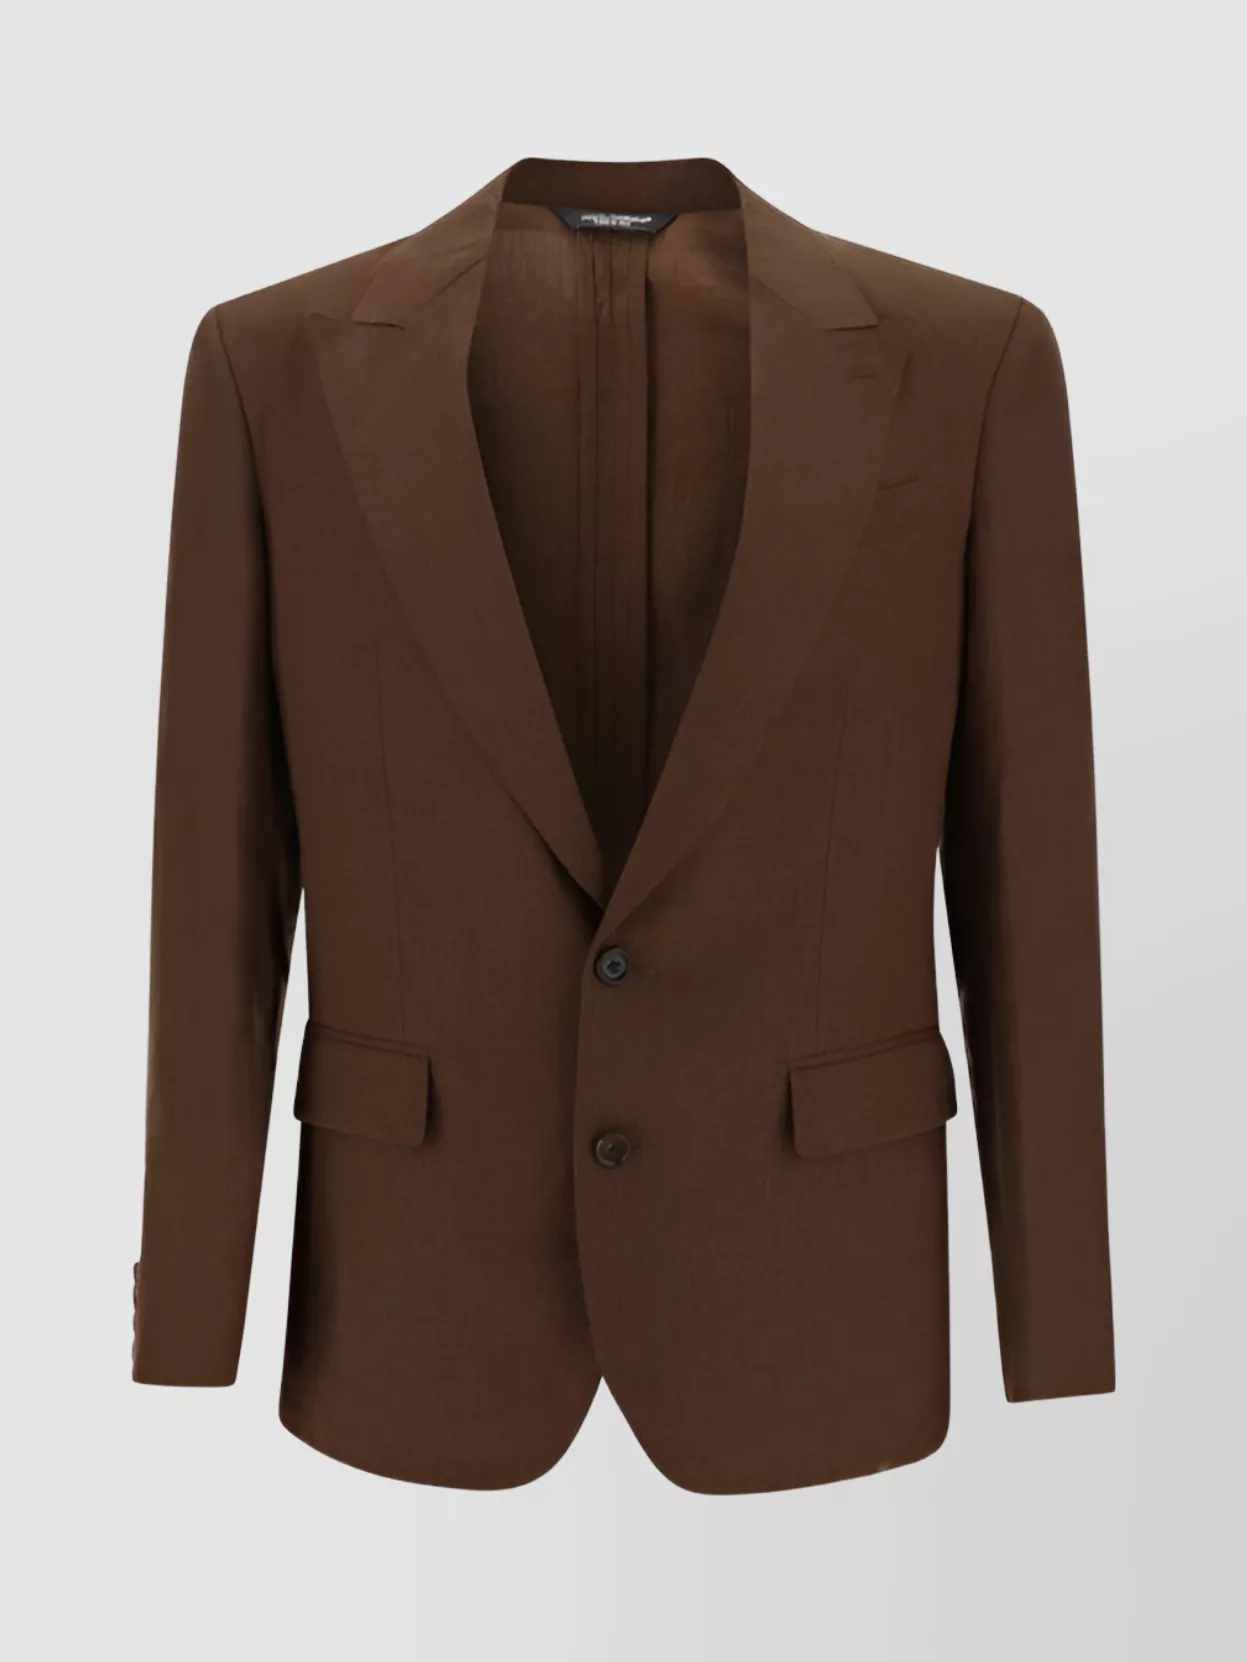 Dolce & Gabbana Linen Blazer Jacket Monochrome Pattern In Brown